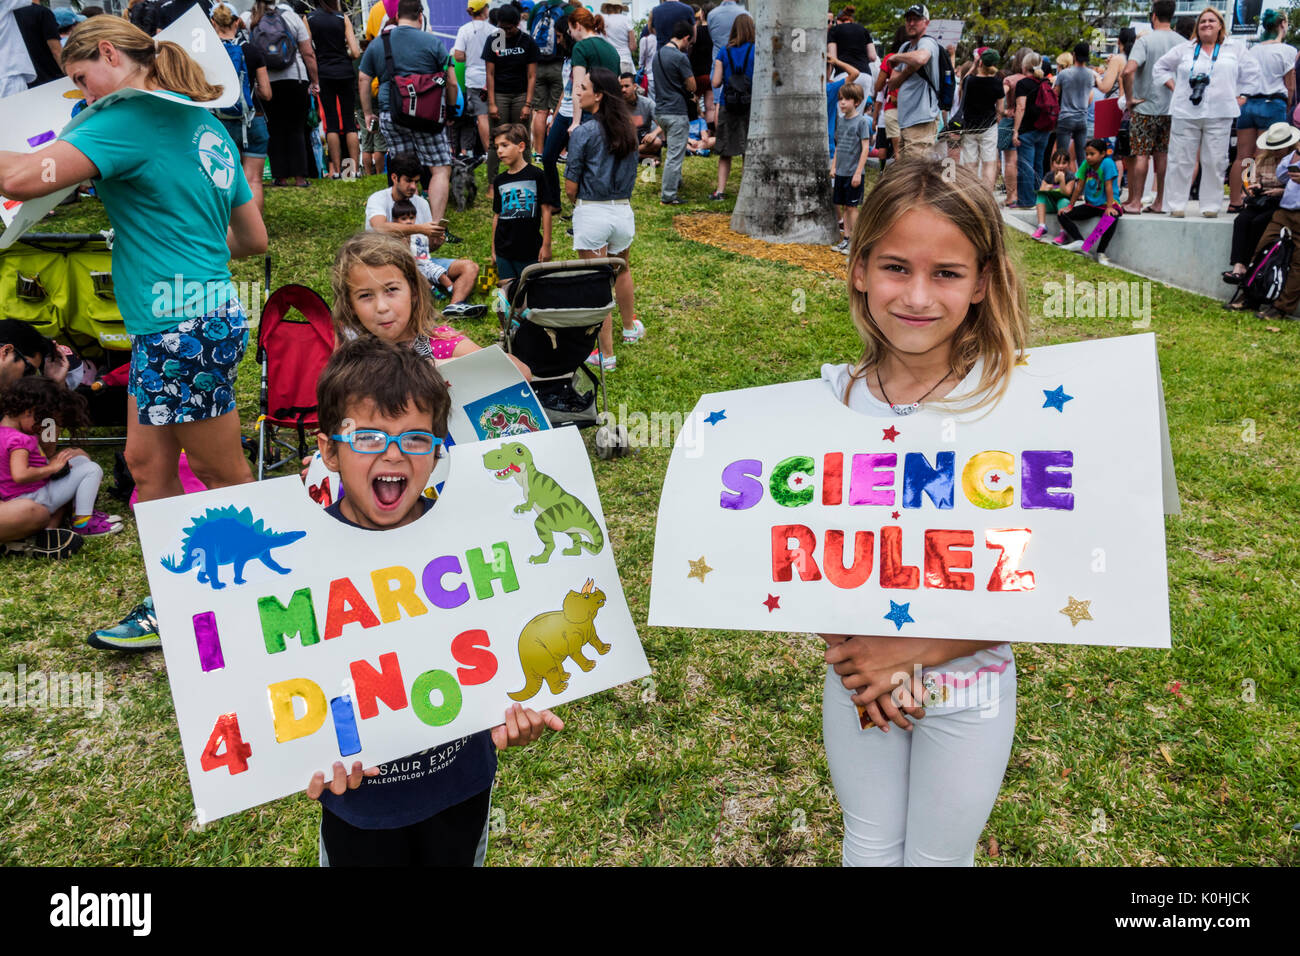 Miami Florida,Museum Park,March for Science,protesta,rally,segno,manifesto,manifestante,ragazzi,ragazzi ragazzi ragazzi ragazzi ragazzi bambini bambini bambini bambini ragazzi,ragazze ragazze,prigionieri femmine Foto Stock